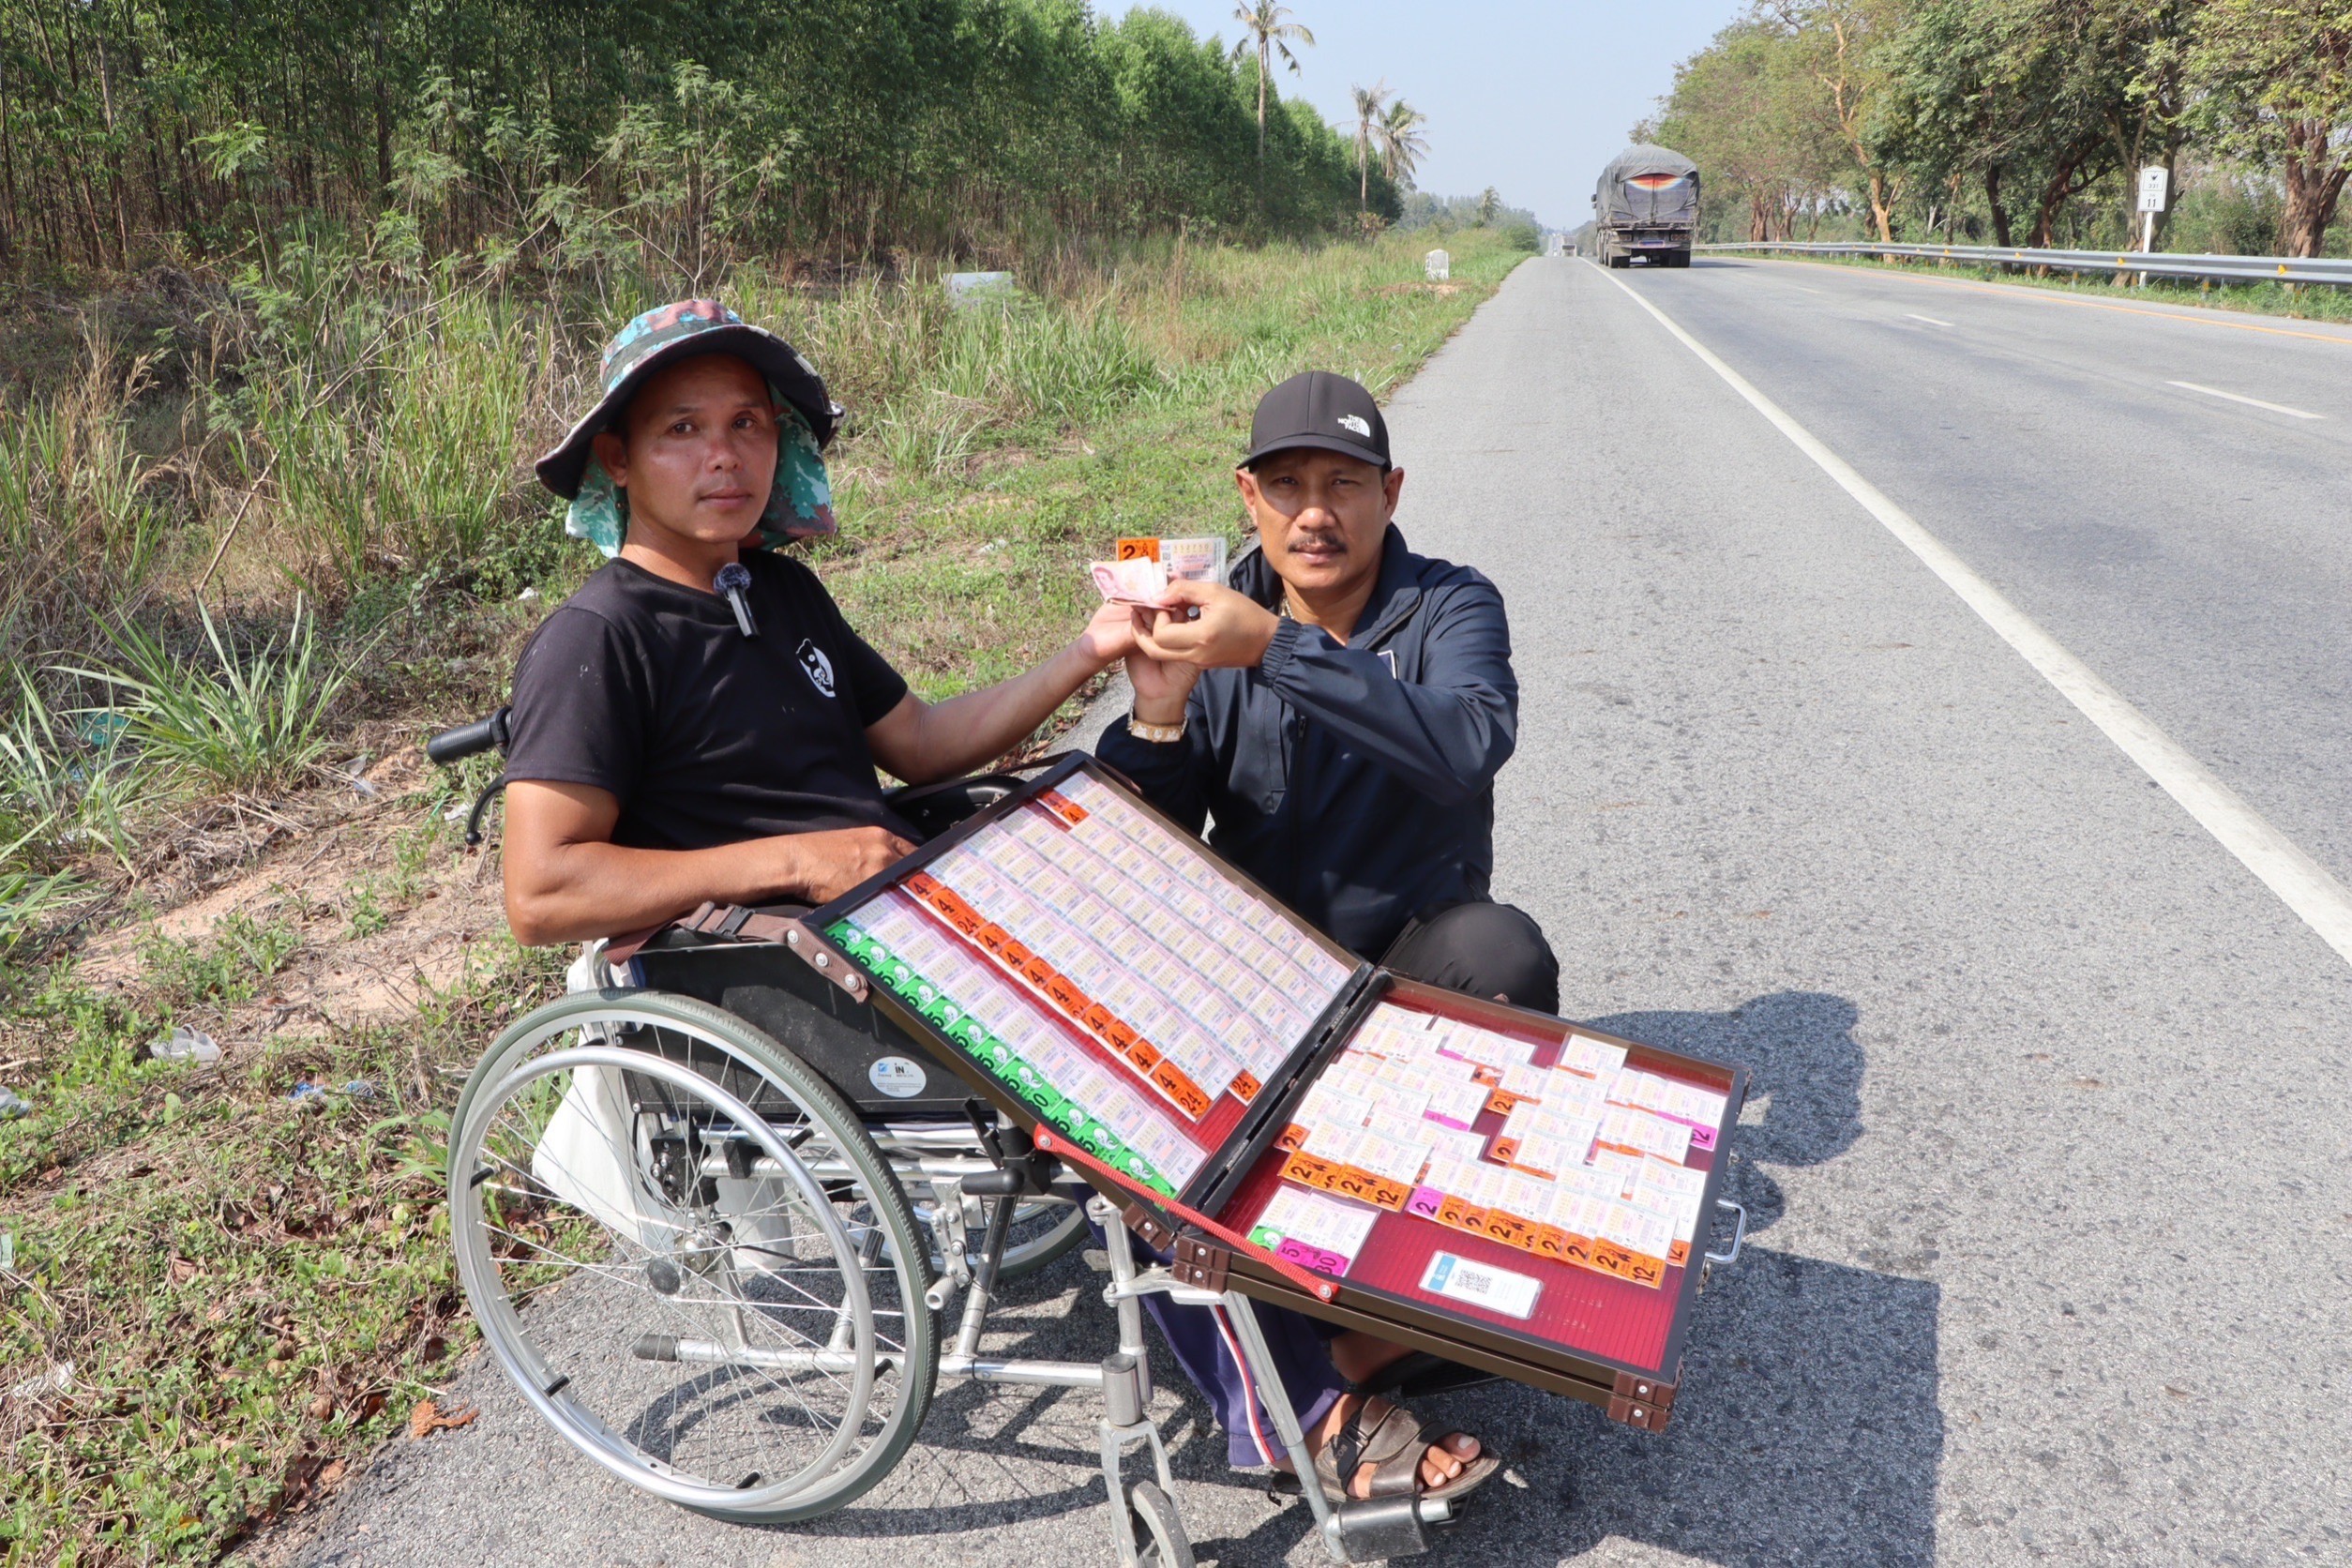 ชลบุรี-ชายพิการสู้ชีวิต เข็นวีลแชร์ข้ามอำเภอกว่า 30 กม. เร่ขายลอตเตอรี่หาเงินเลี้ยงชีพ